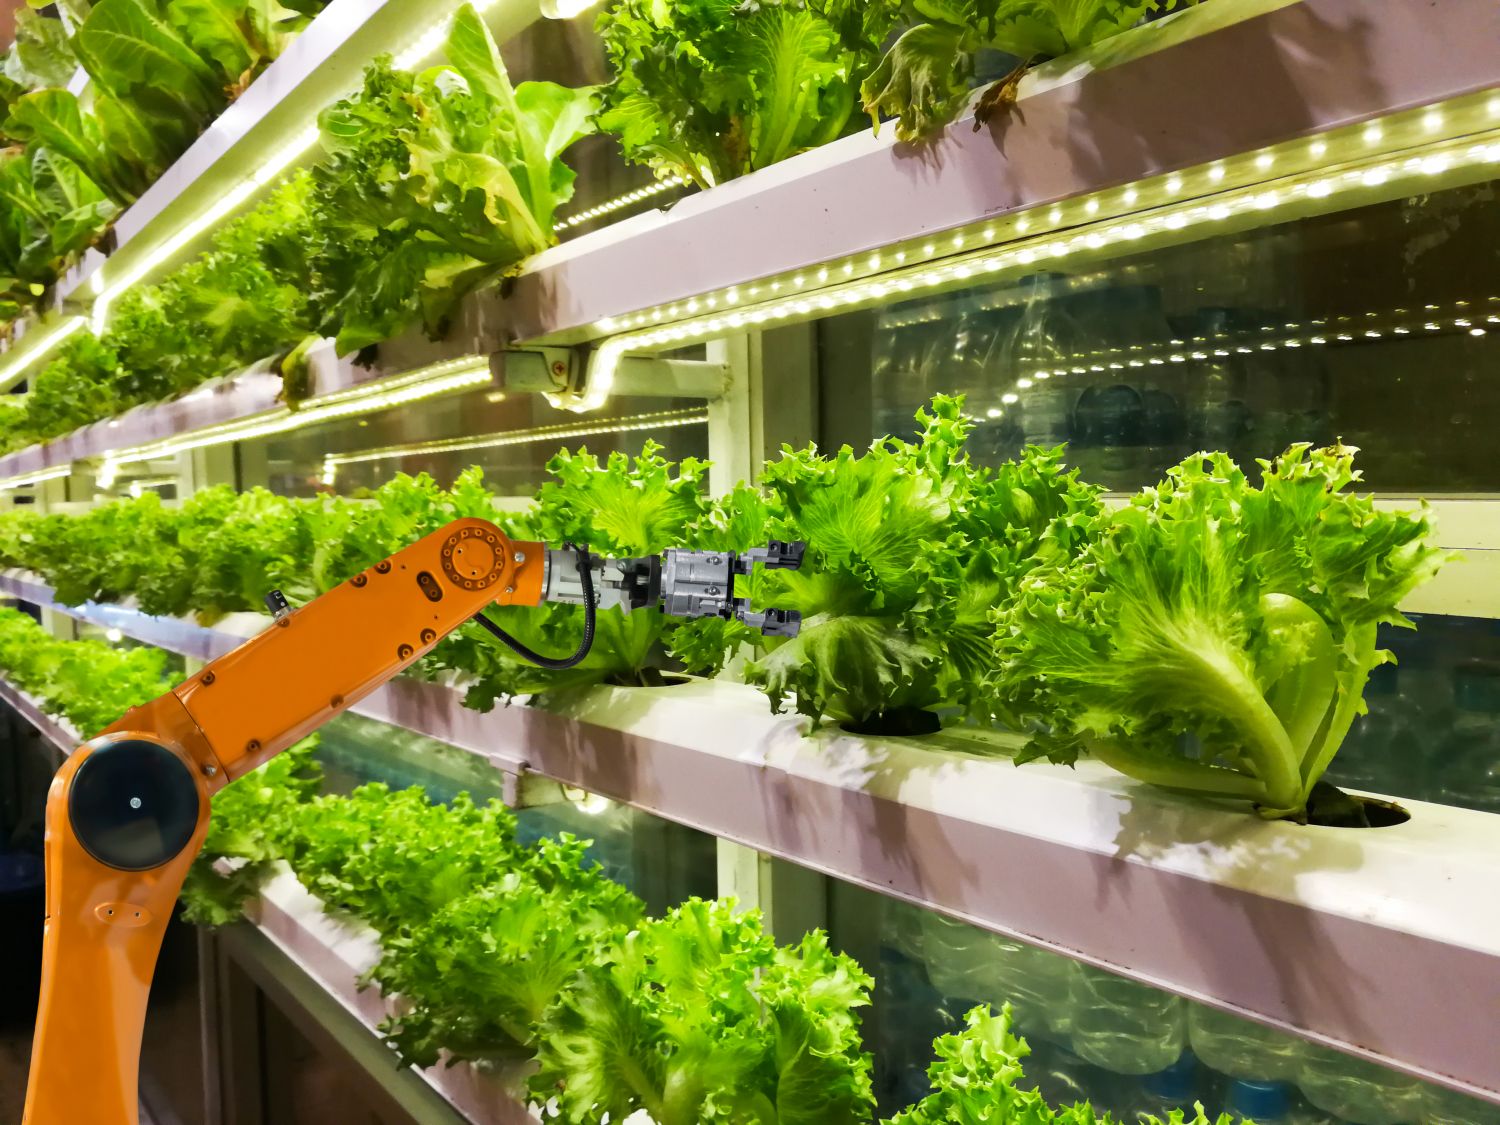 Ein Roboterarm bewirtschaftet Salatpflanzen im Gewächshaus. Thema: Landwirtschaft 4.0.